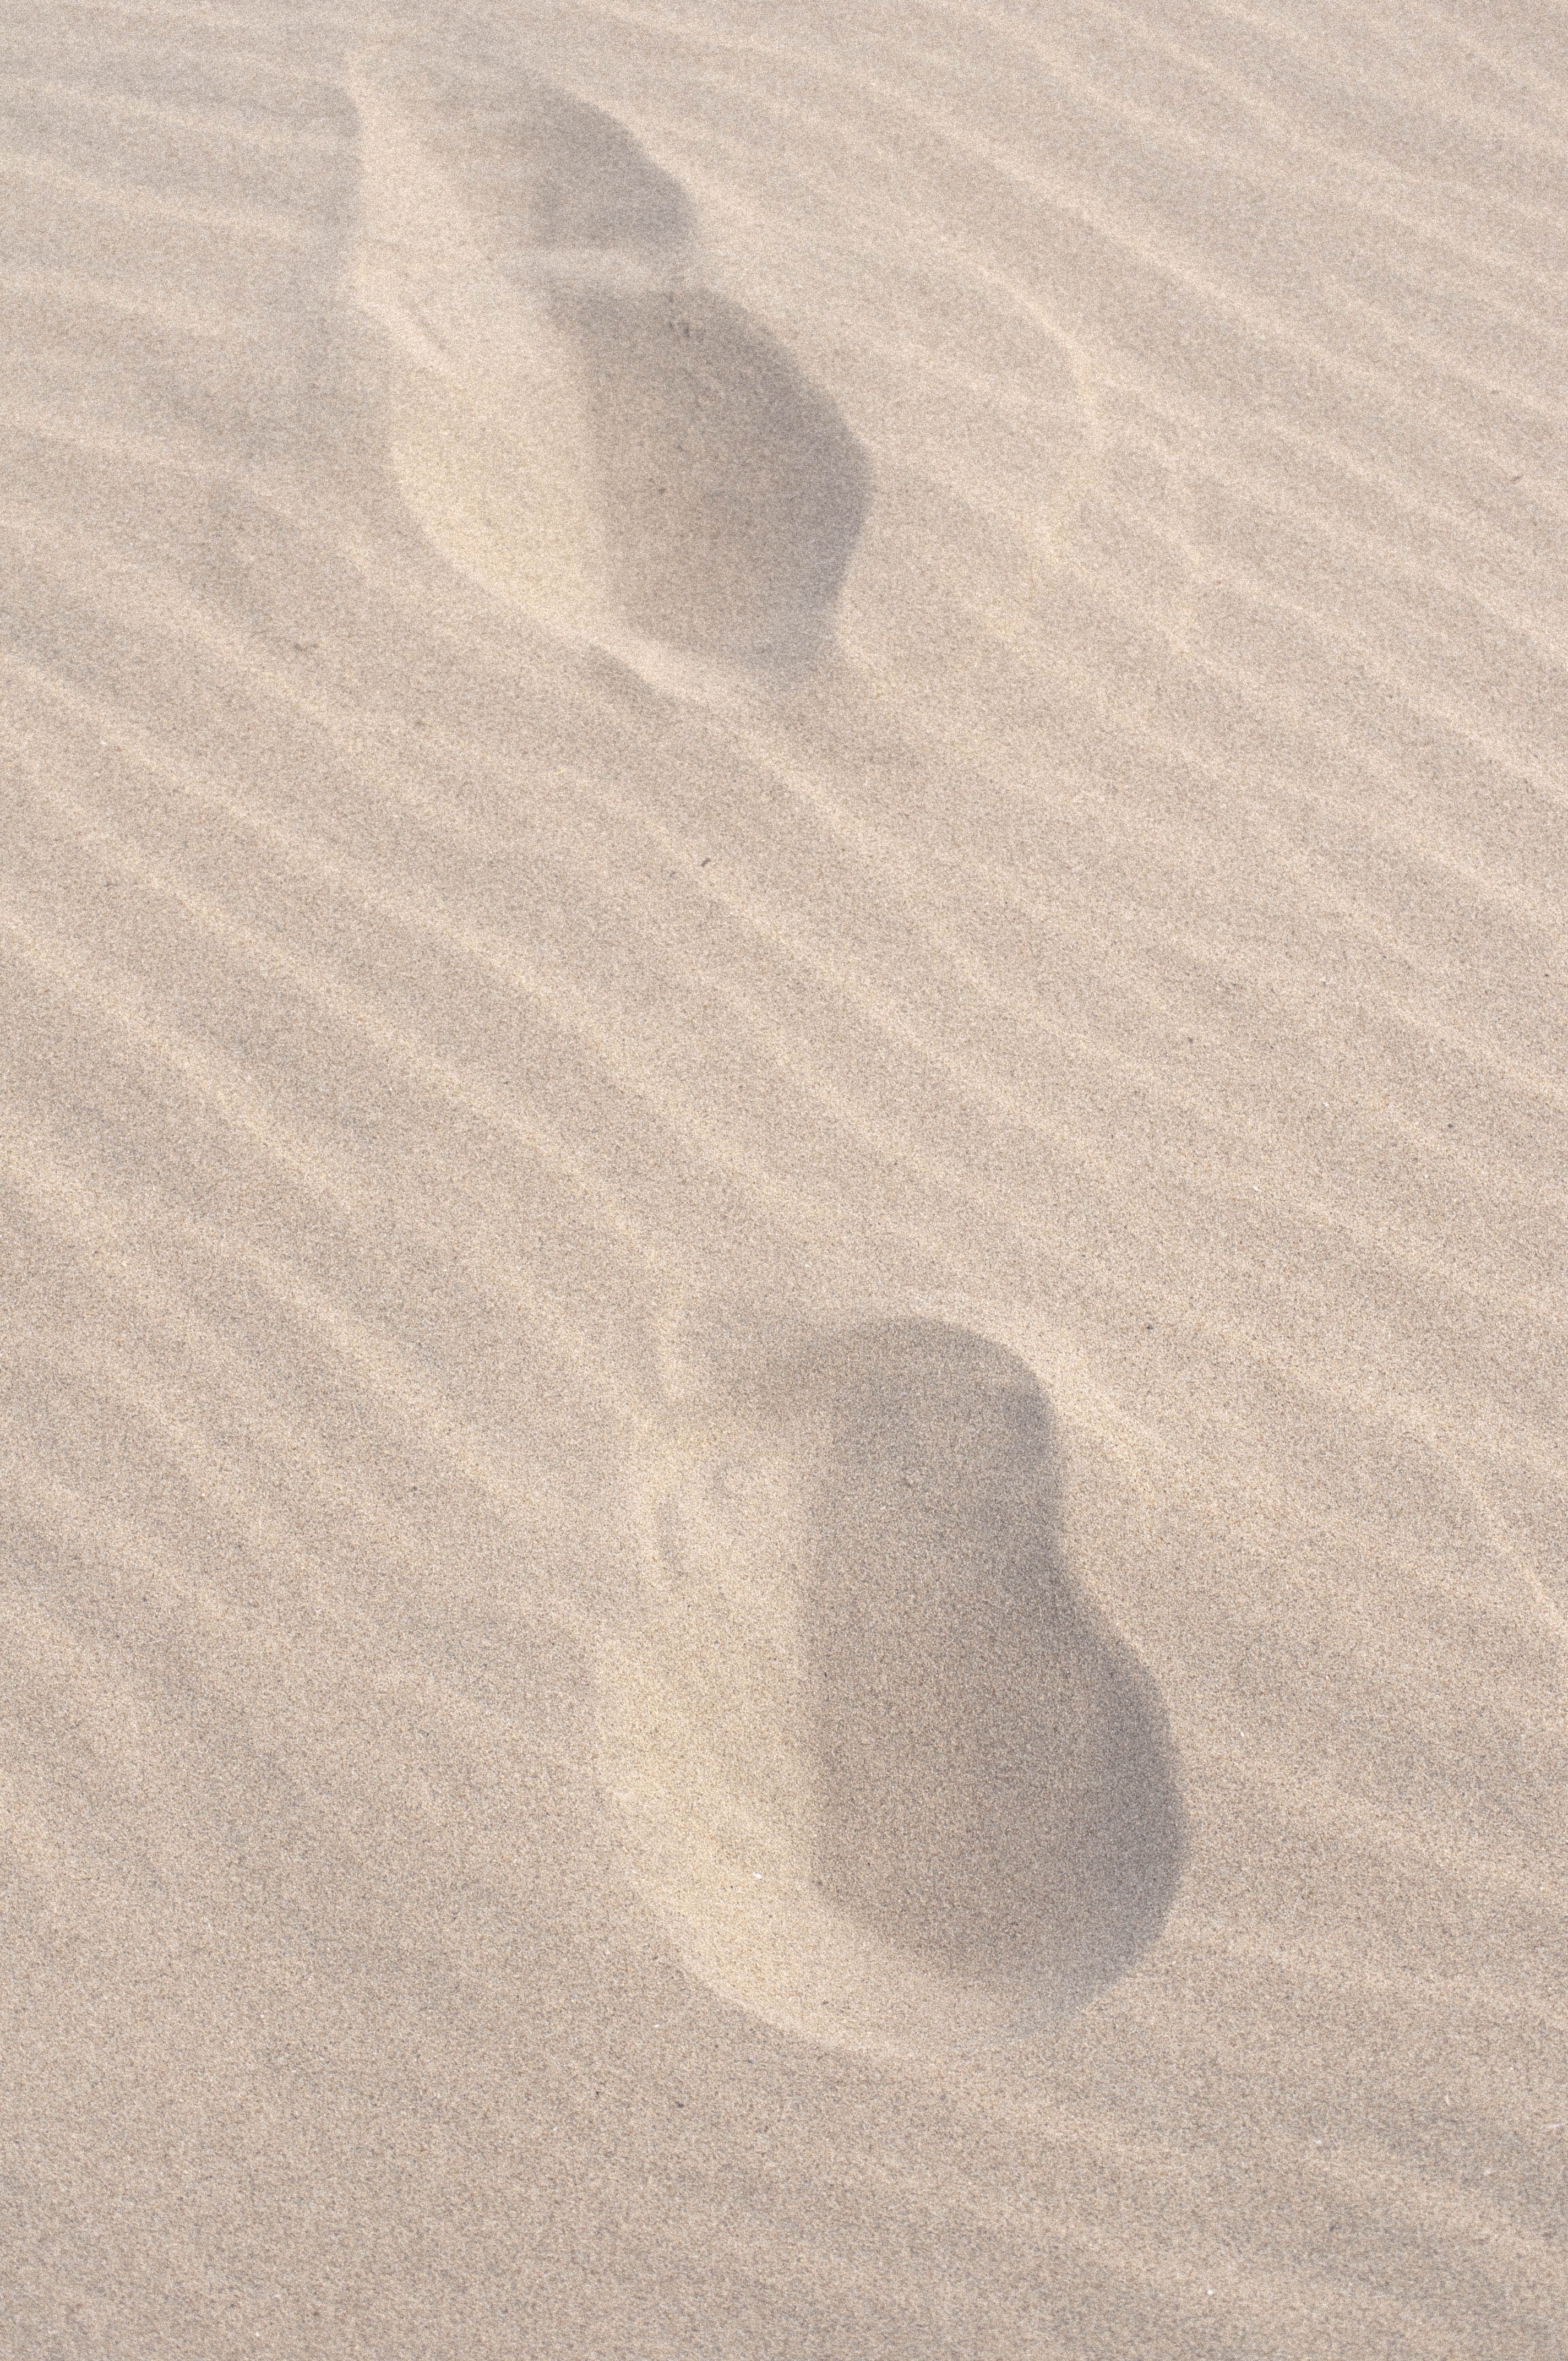 sand, beach, miscellanea, miscellaneous, traces 4K, Ultra HD